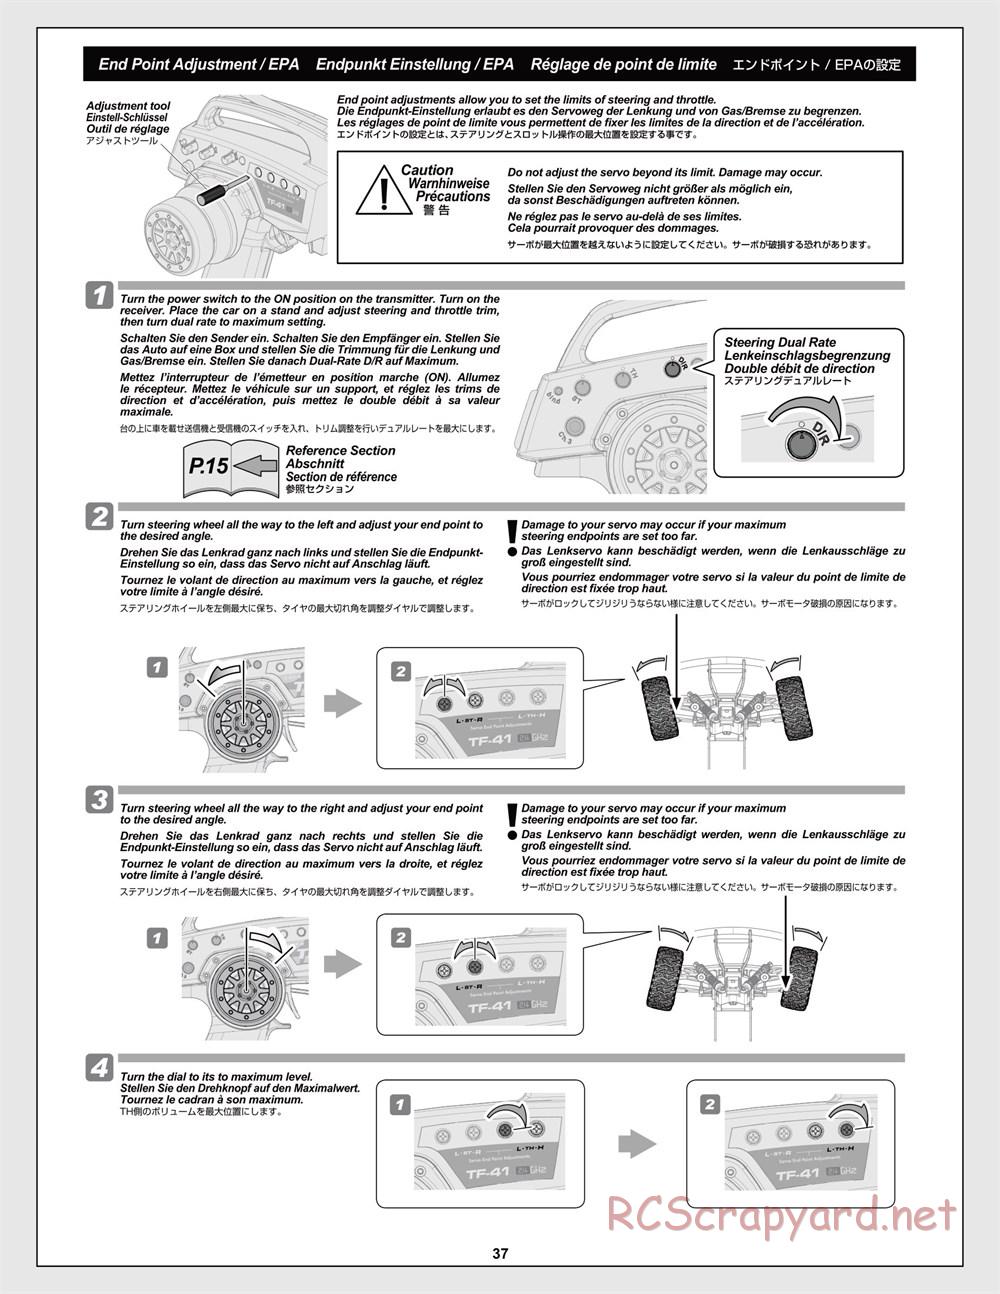 HPI - Jumpshot MT V2 - Manual - Page 37